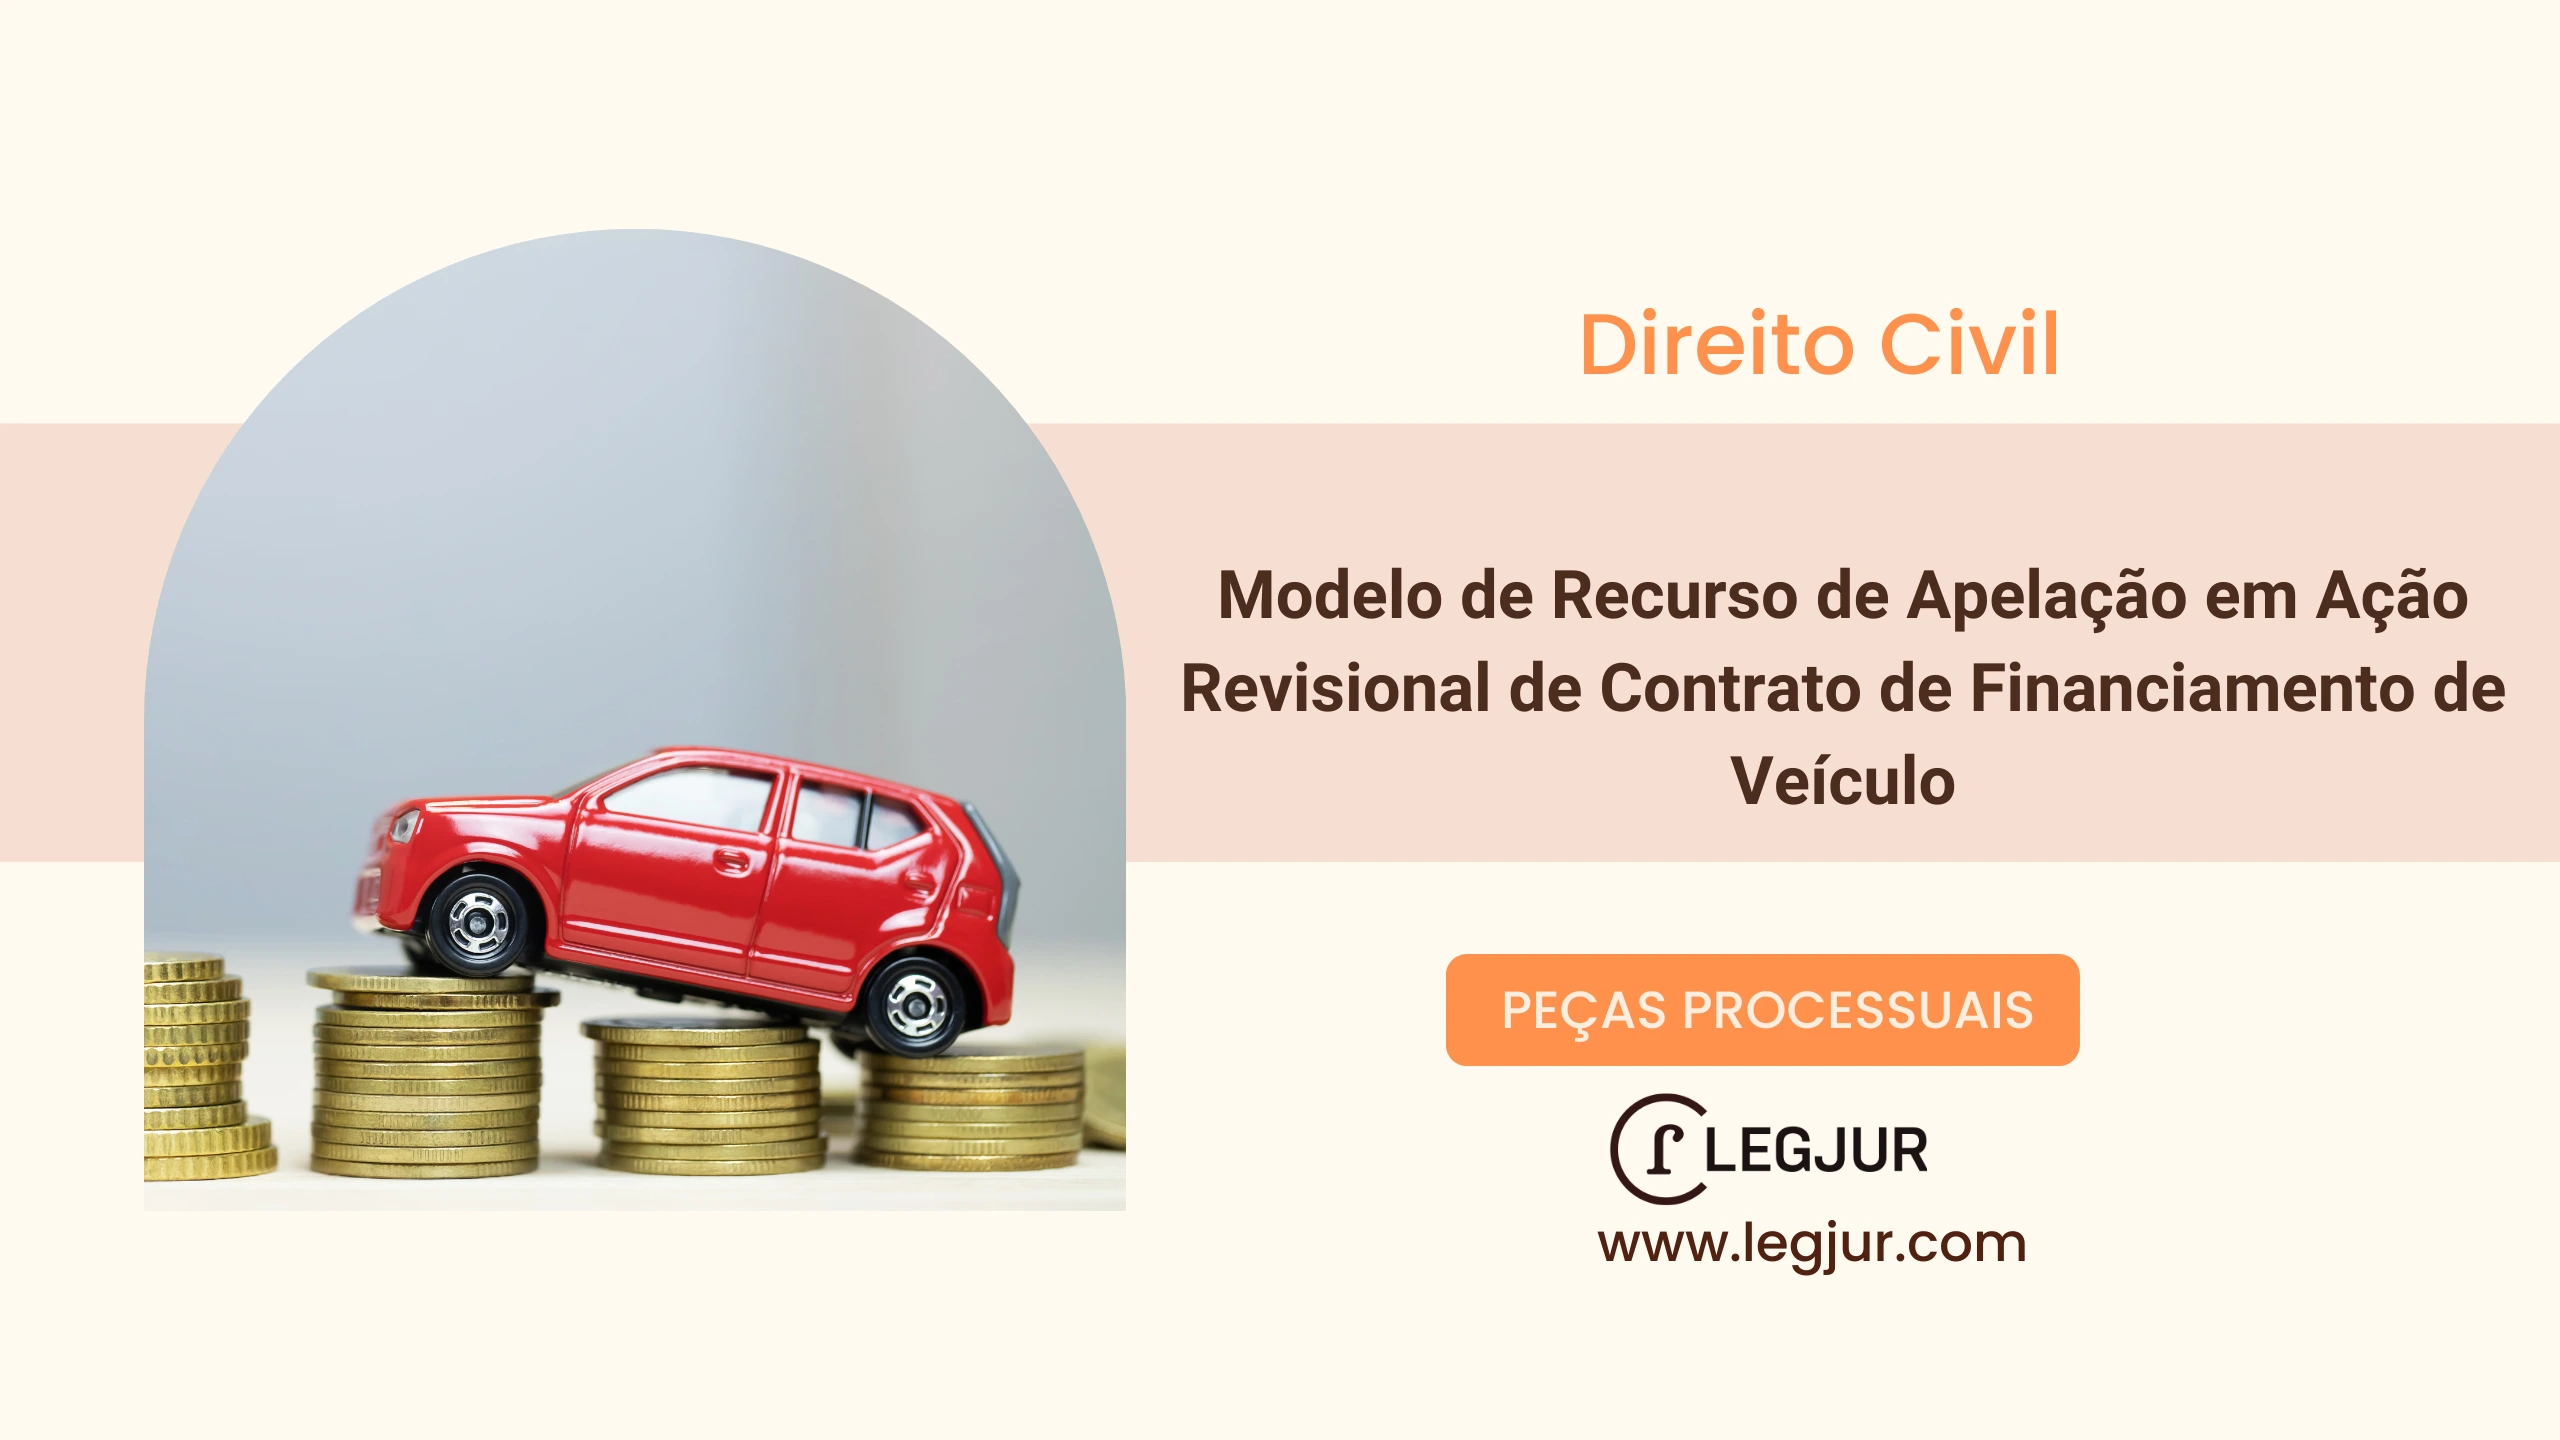 Modelo de Recurso de Apelação em Ação Revisional de Contrato de Financiamento de Veículo